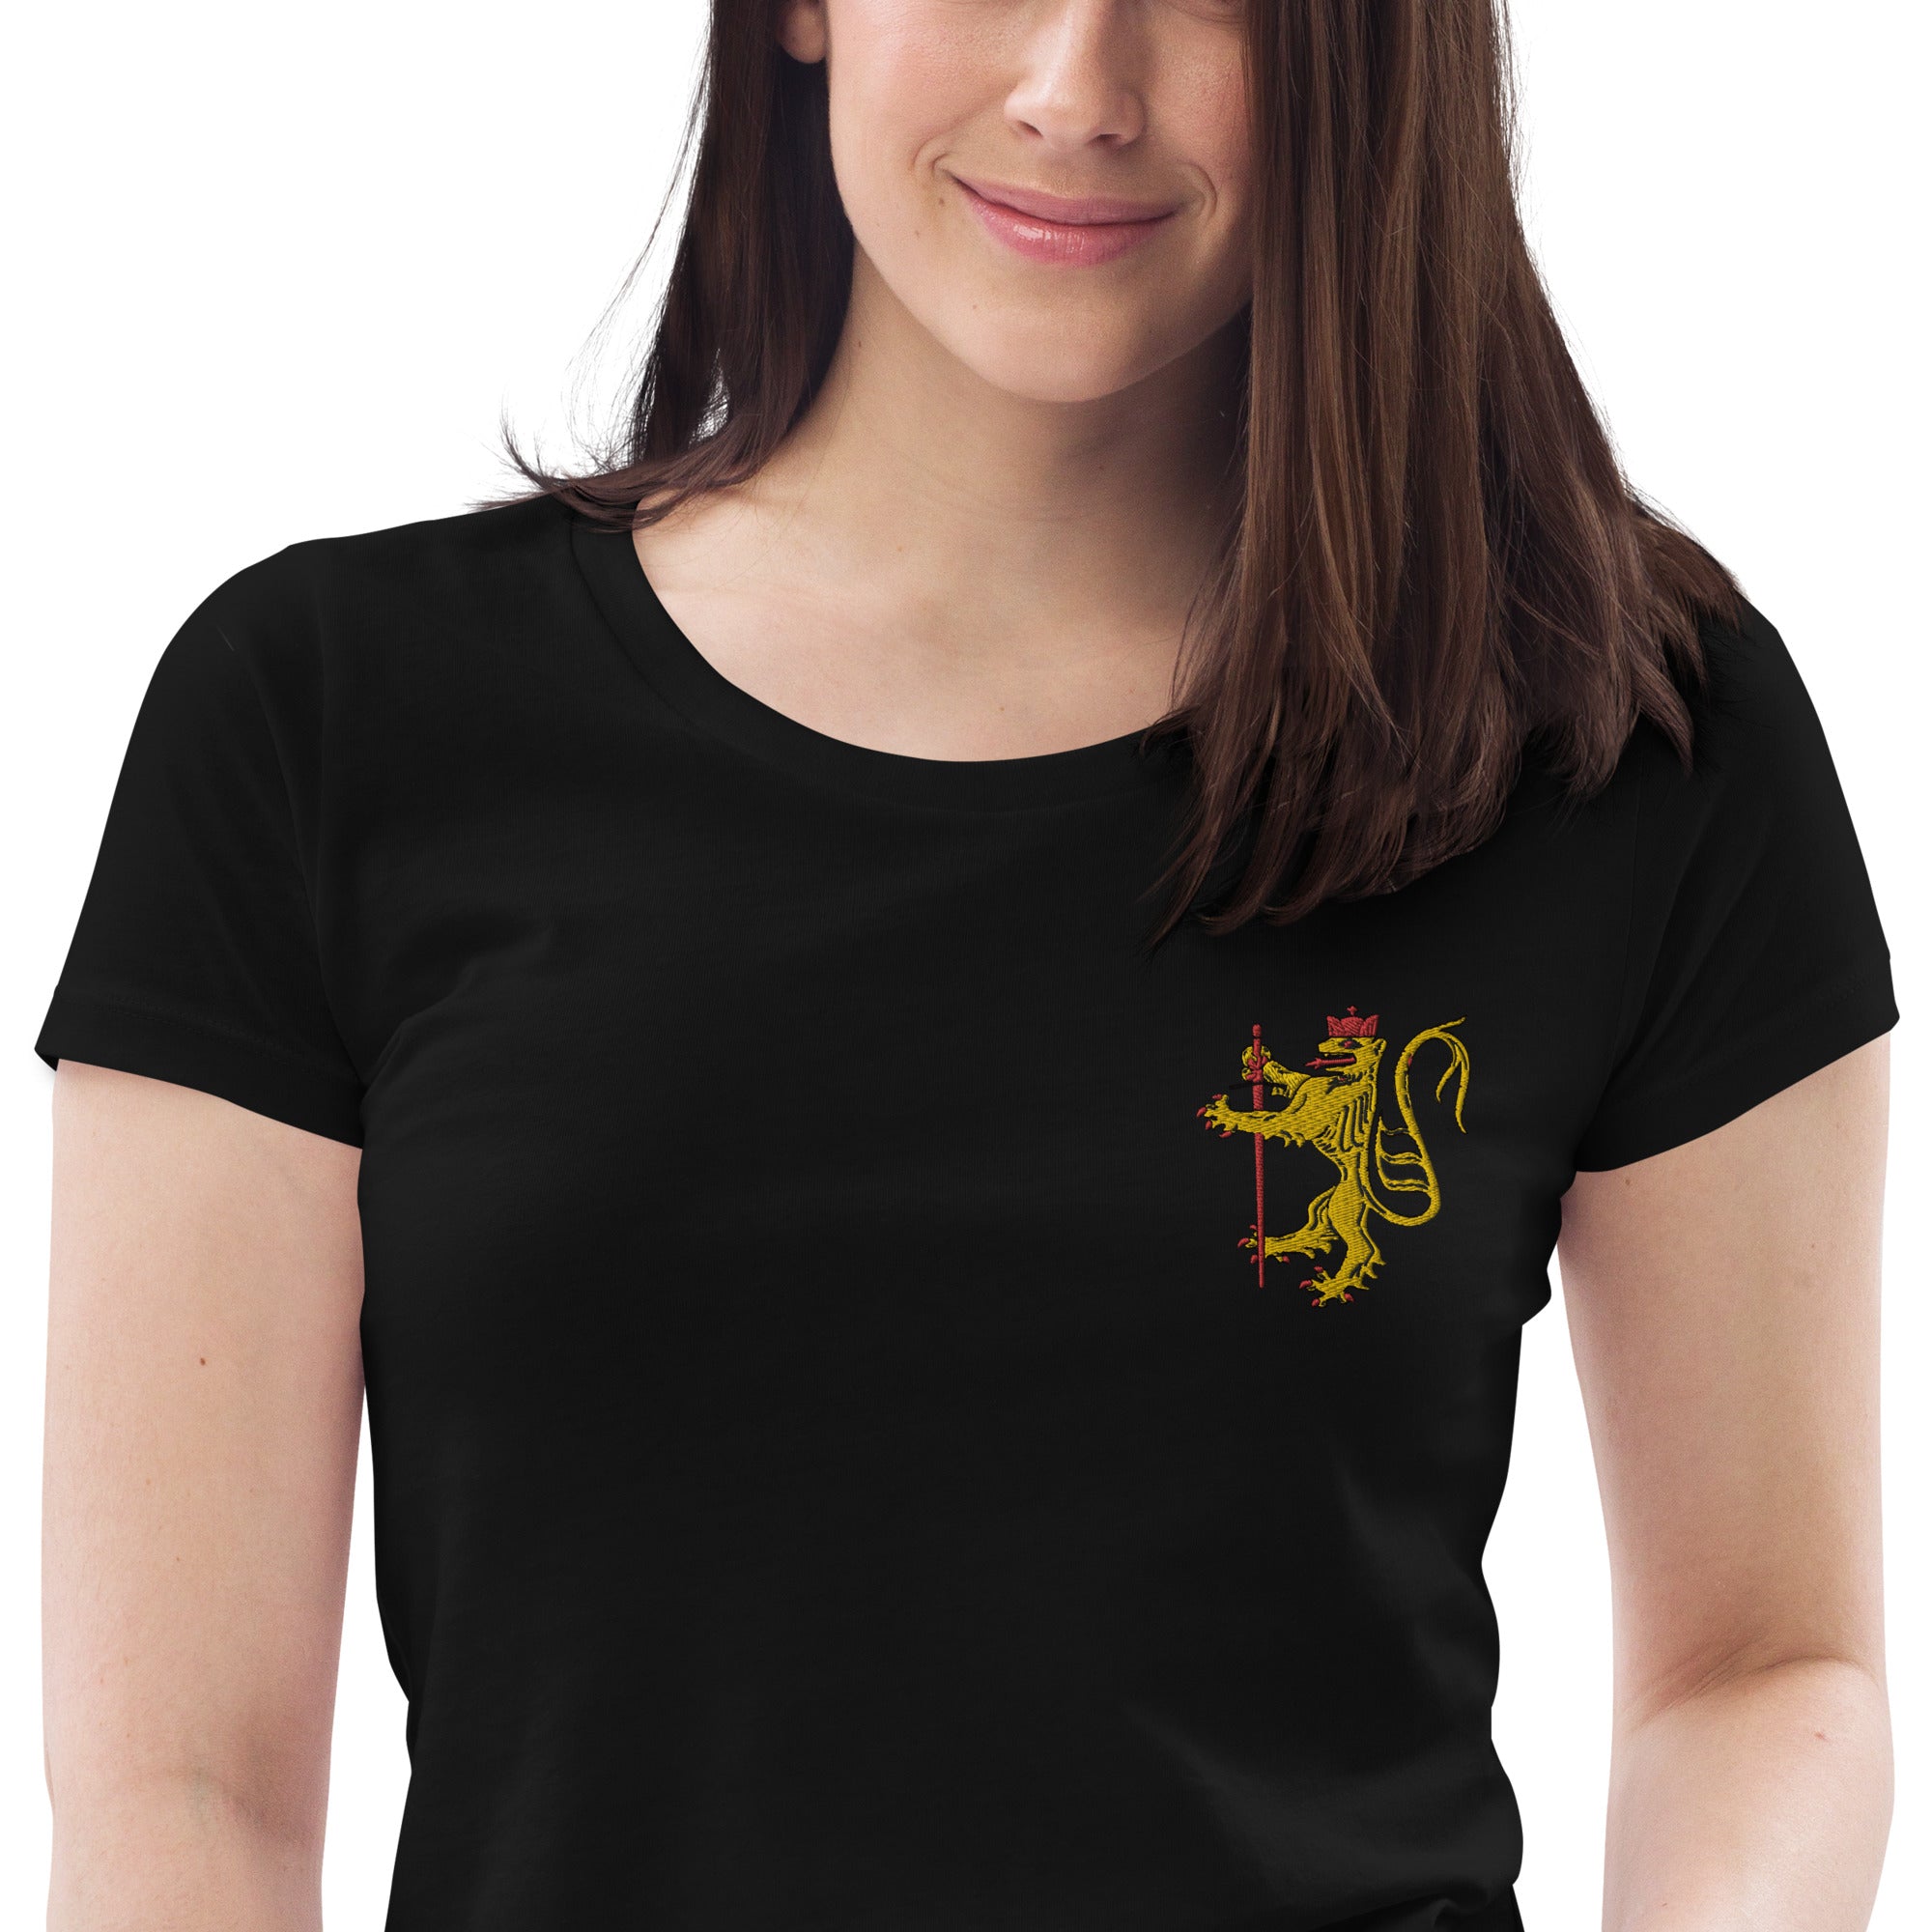 Enganliegendes Öko-T-Shirt für Damen